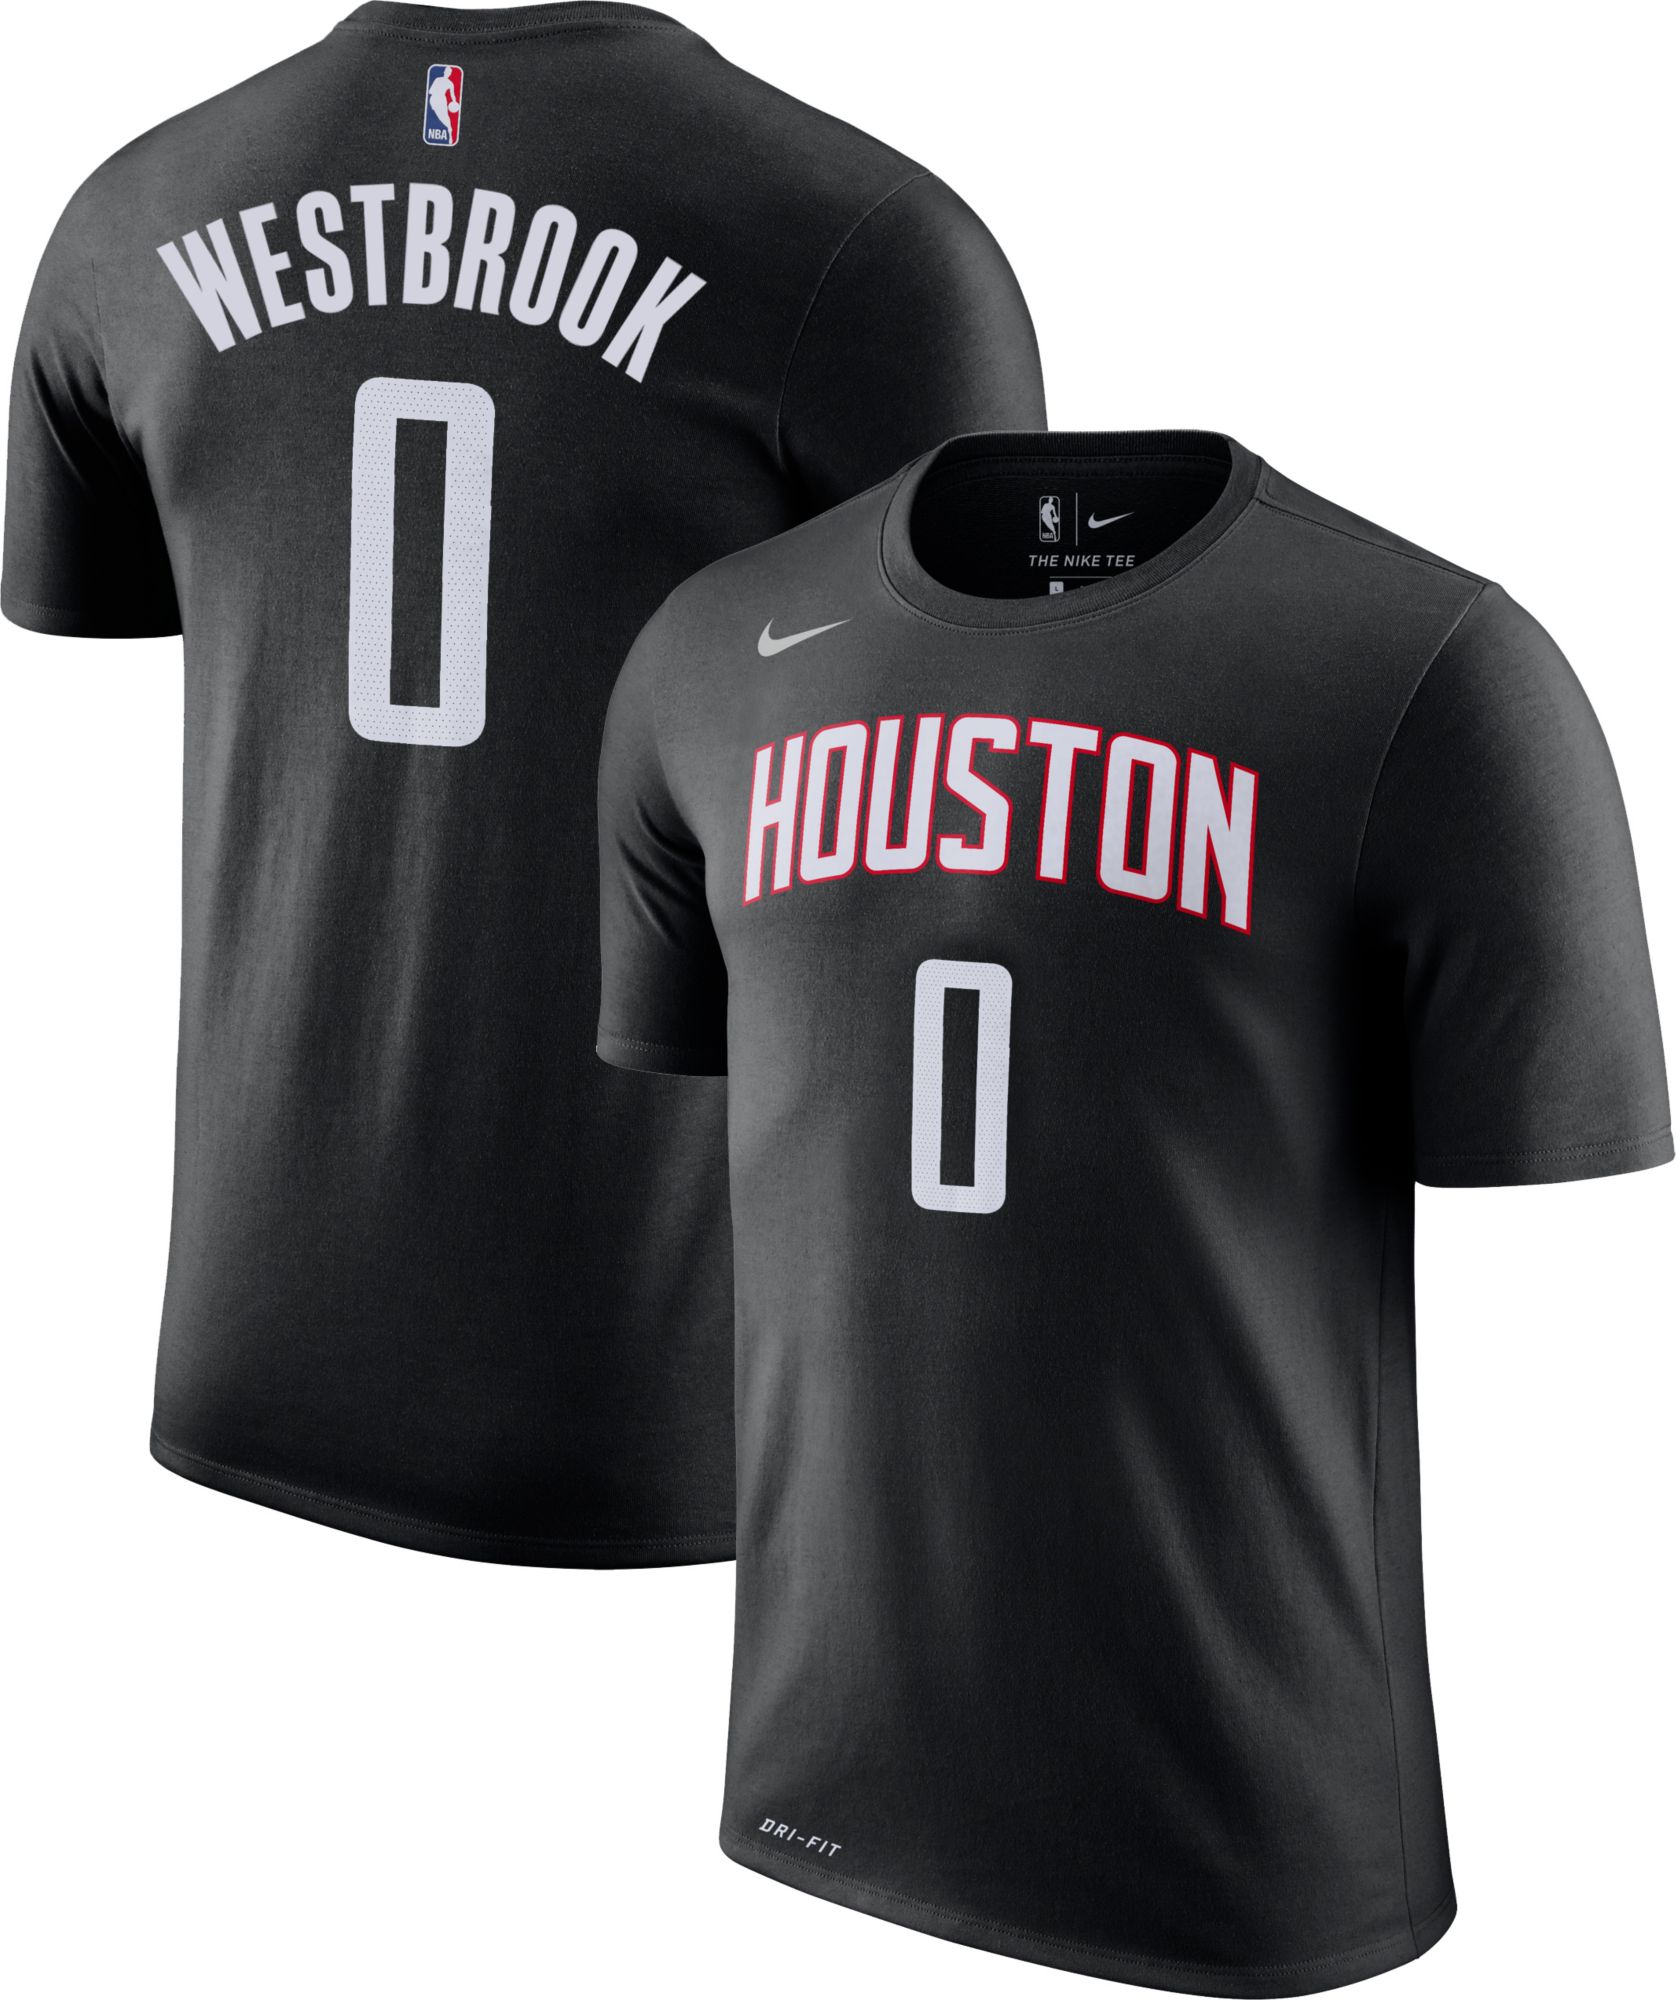 westbrook rockets shirt